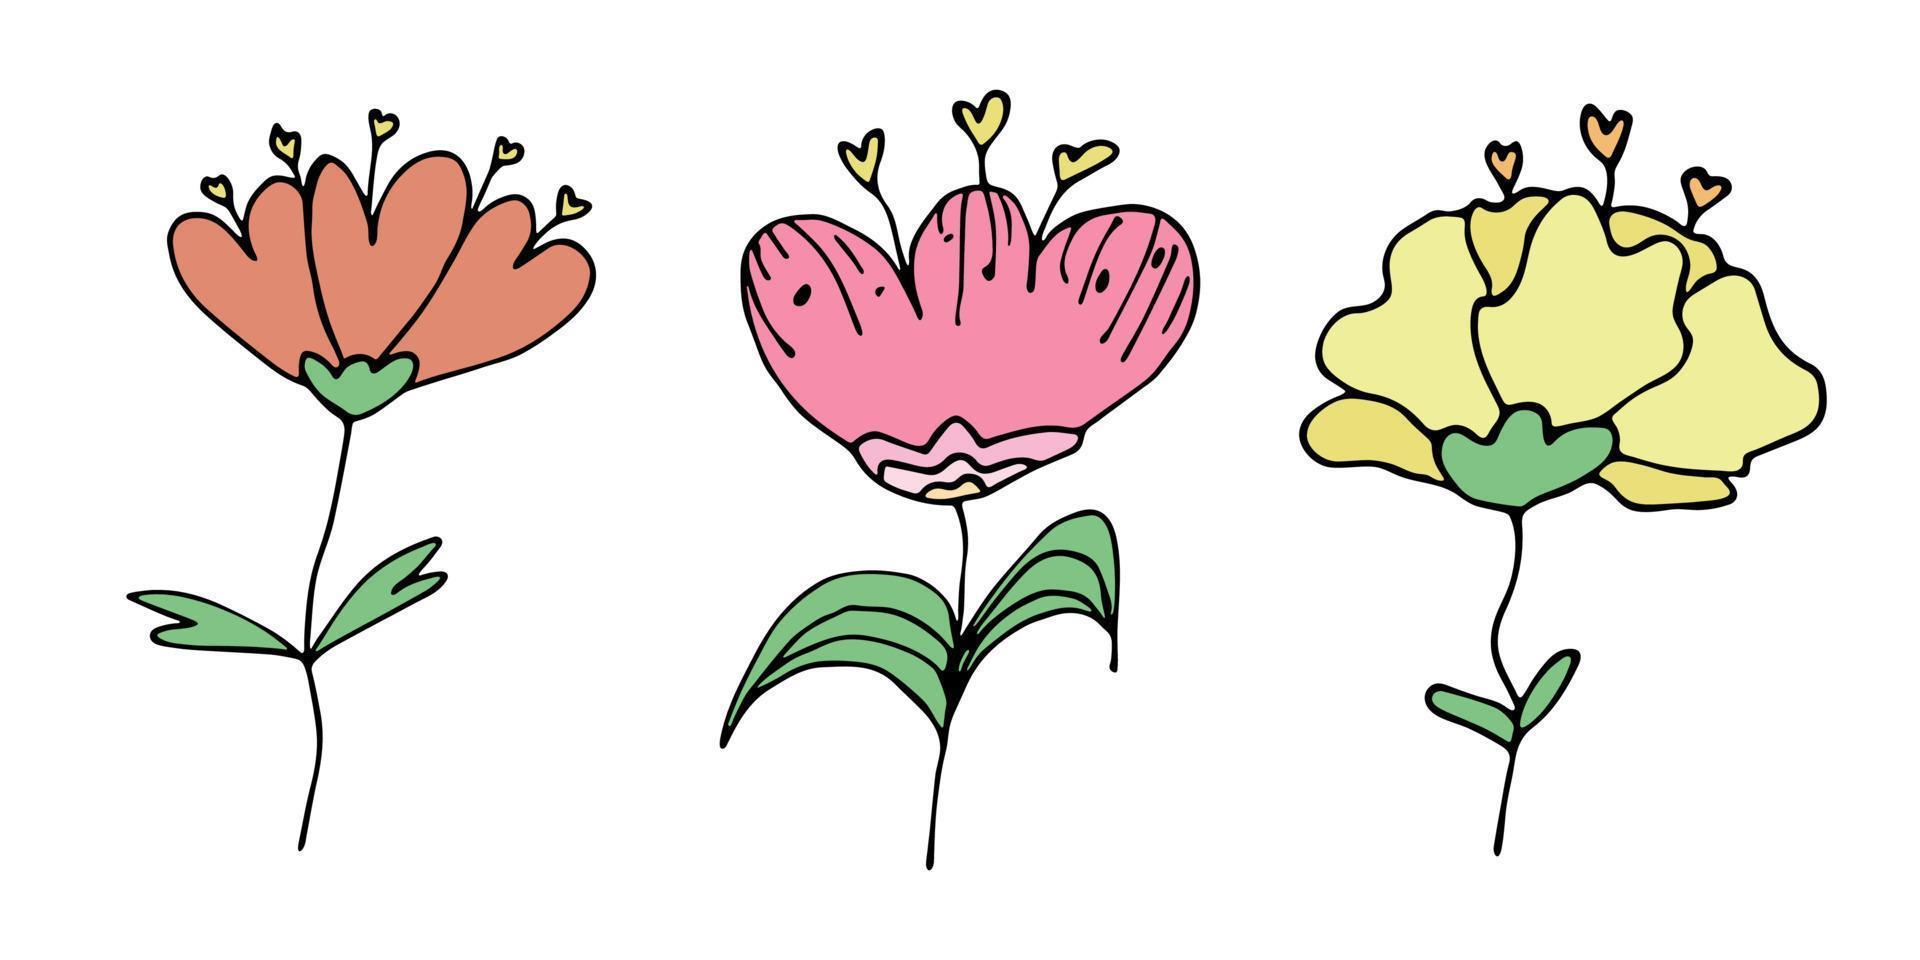 imágenes prediseñadas de flores simples. conjunto de garabatos florales dibujados a mano. para impresión, web, diseño, decoración, logotipo vector